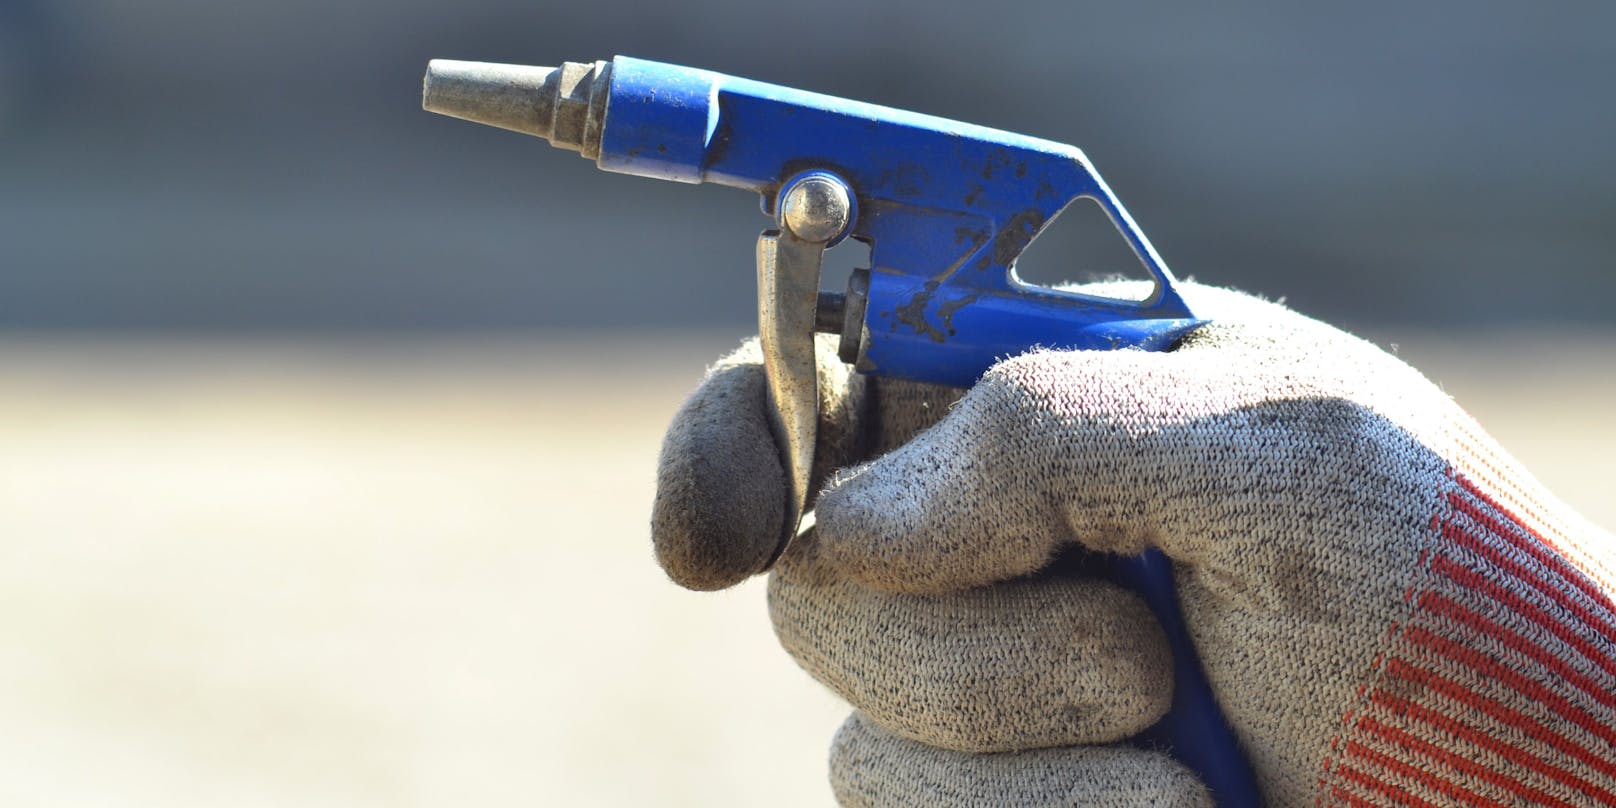 Druckluftpistole in der Hand eines Arbeiters. (Symbolbild)